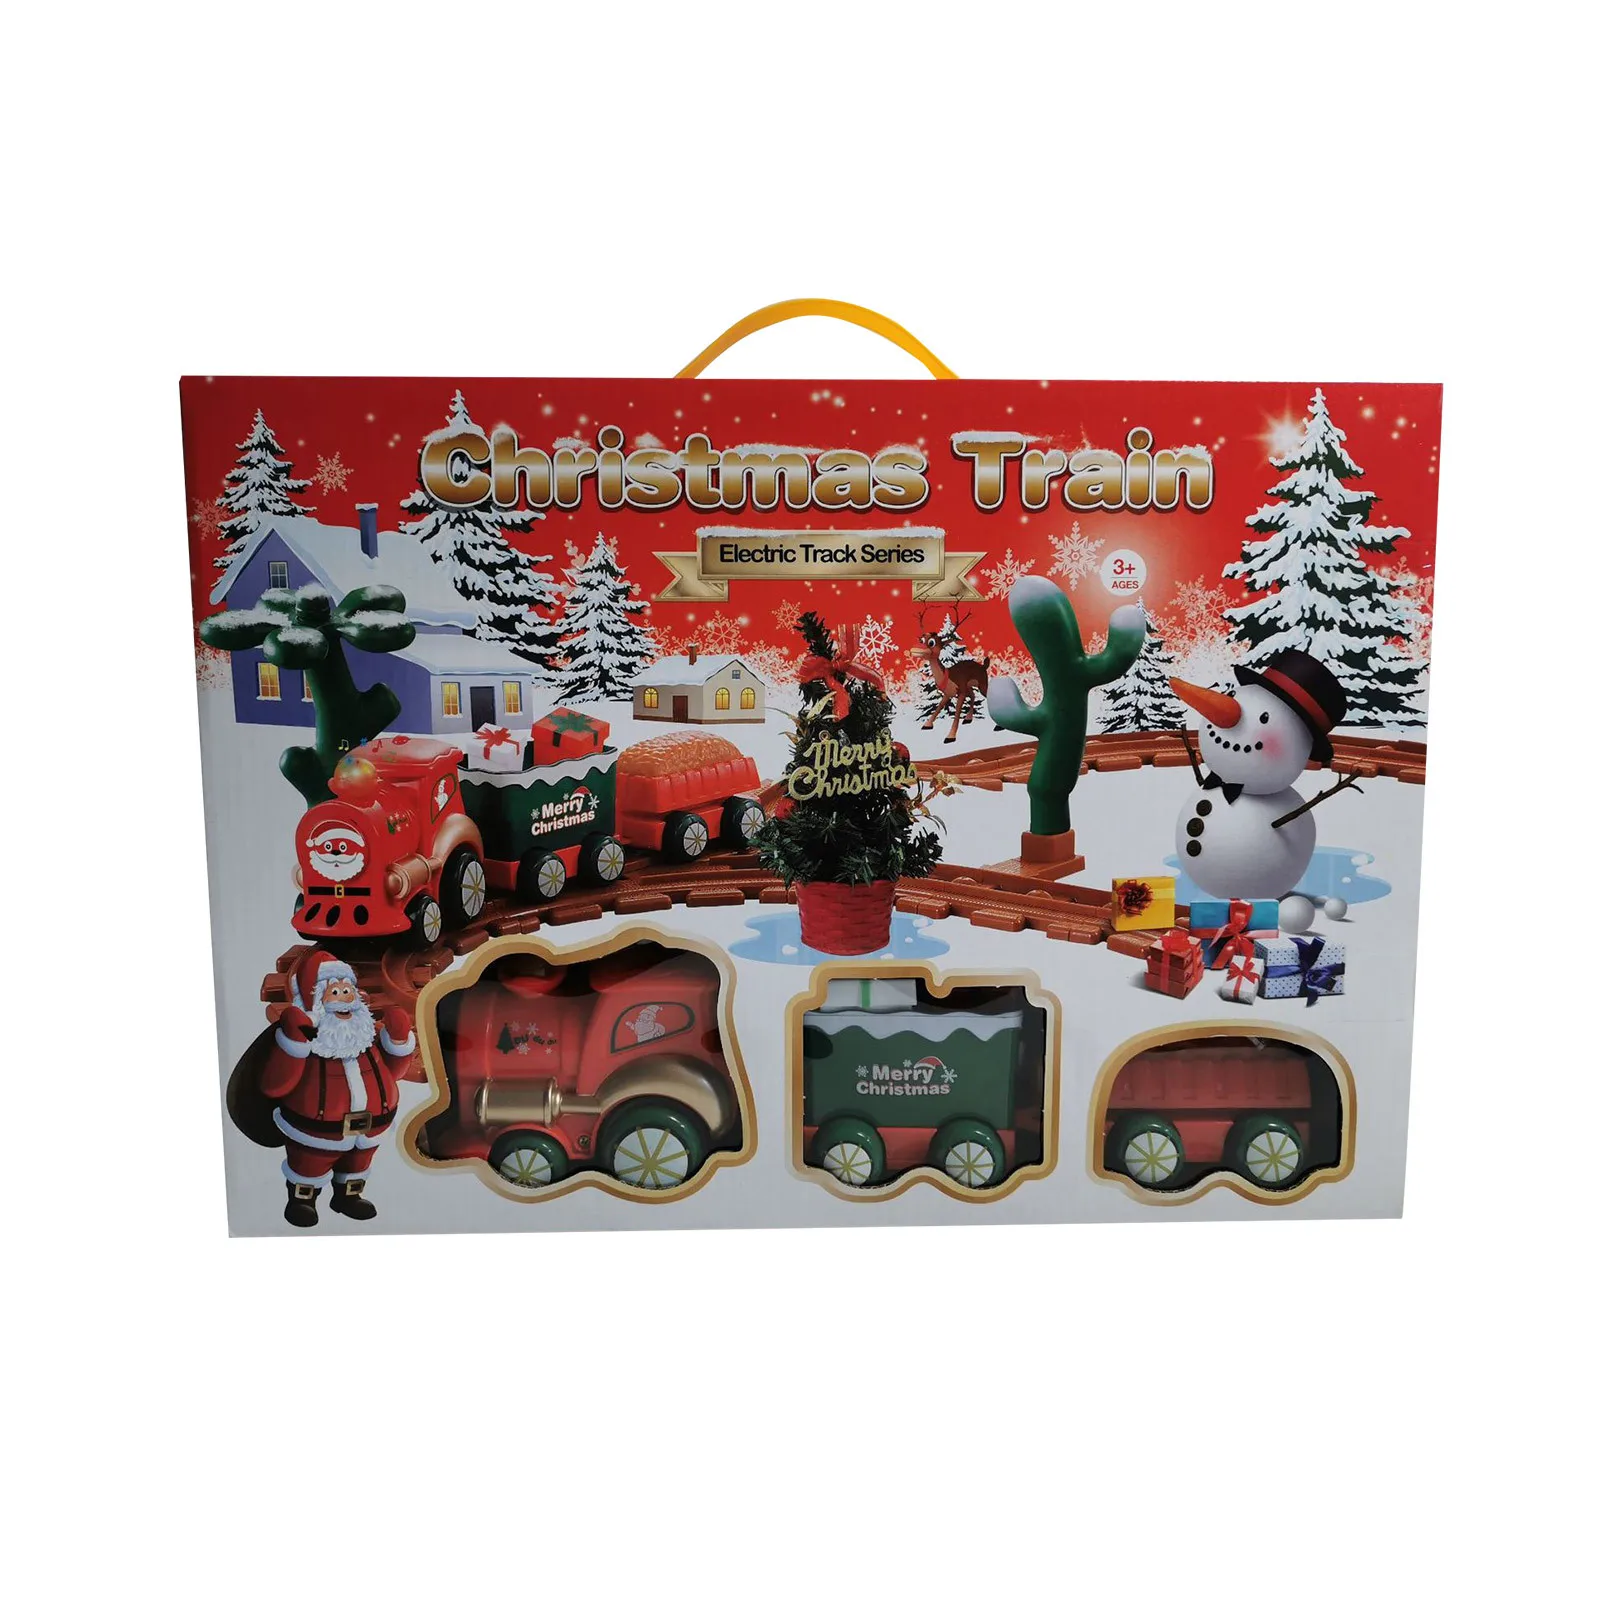 

Рождественский реалистичный набор электрического поезда, легко разобрать задницу и безопасно для детей, подарок и фото, украшение для дома и рождественской елки